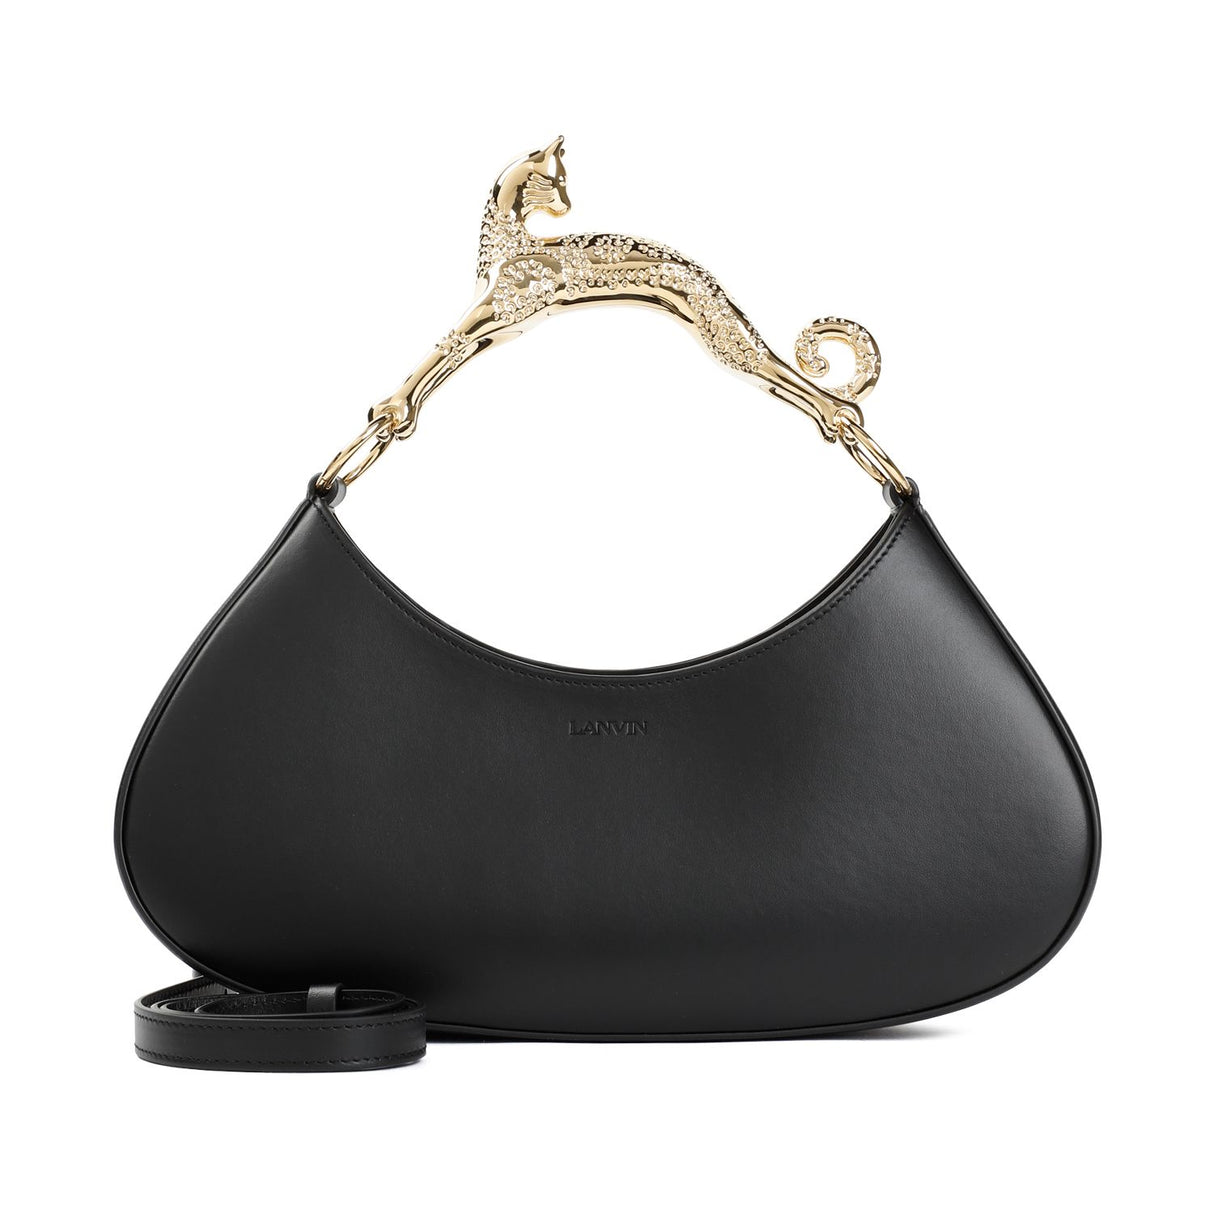 LANVIN Chic Black Leather Hobo Handbag with Cat Handle, W:28CM H:12CM D:10CM